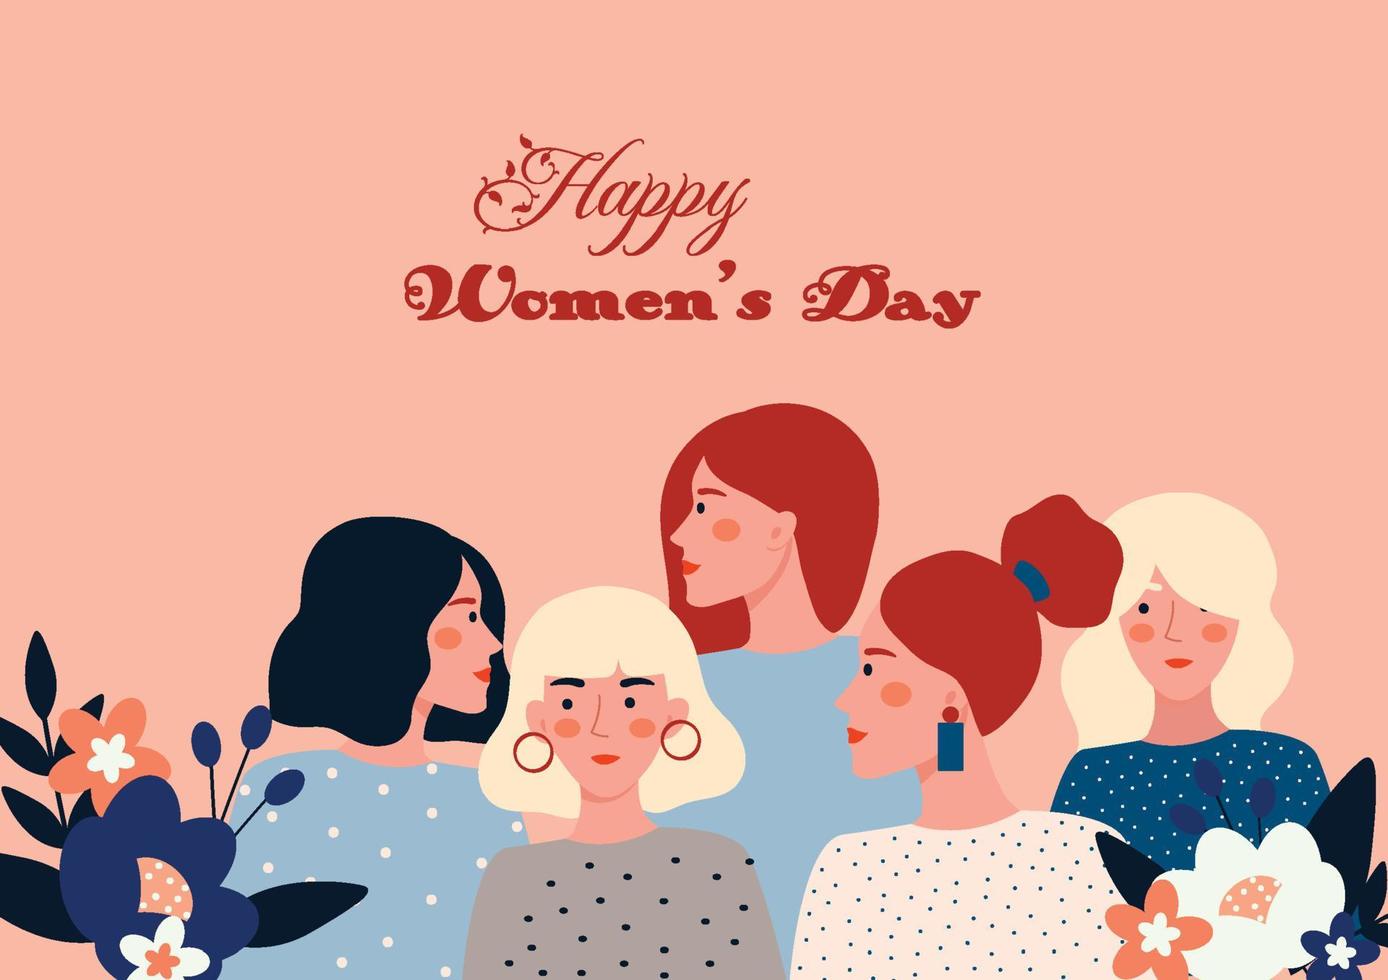 glad kvinnodagskort med fem kvinnor vektor